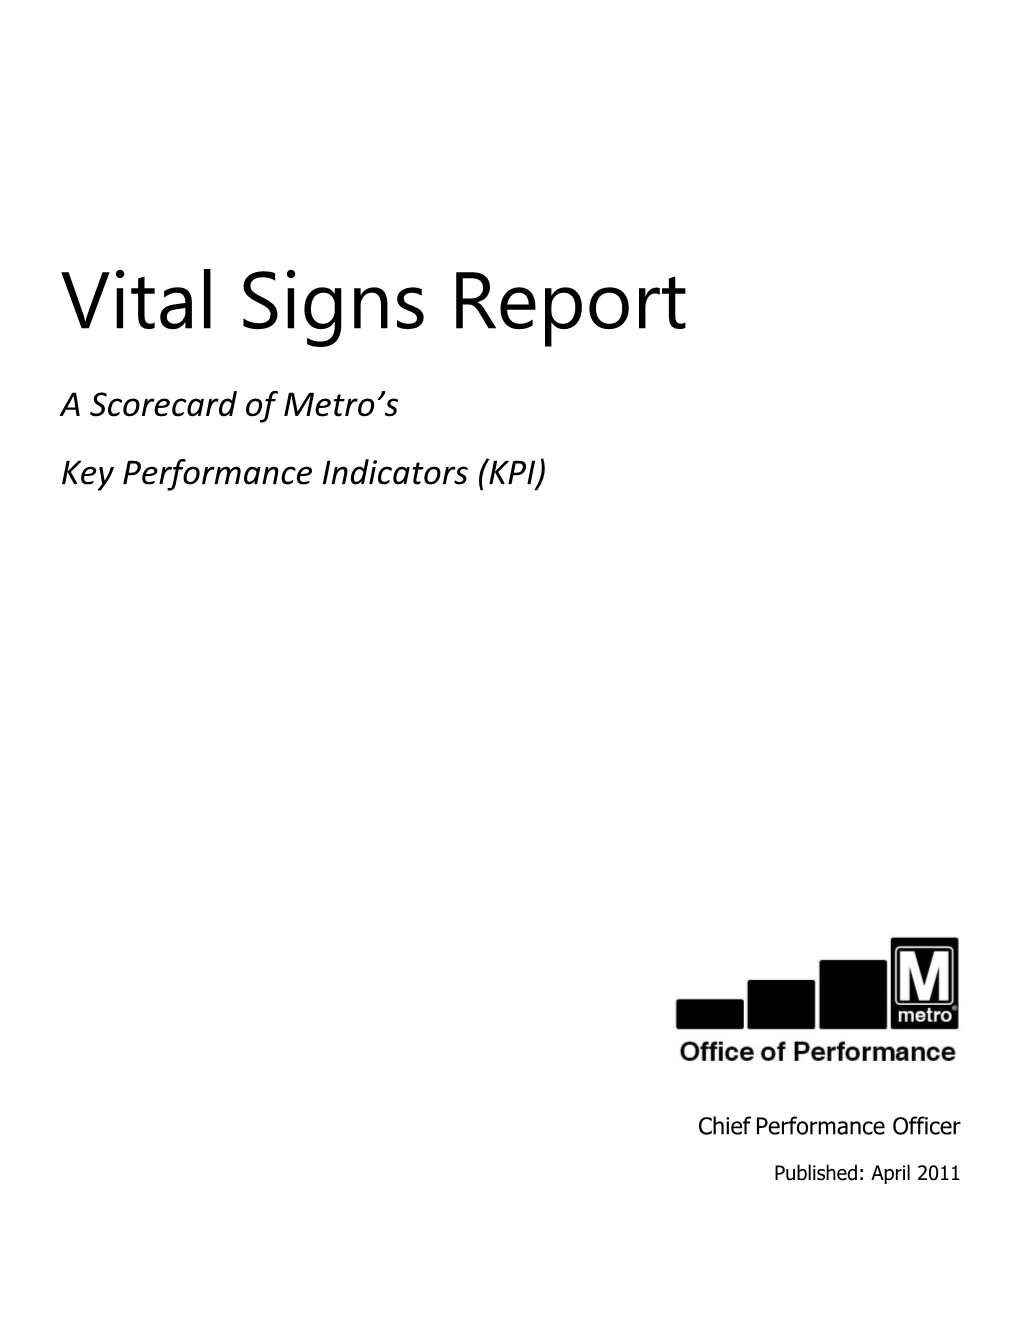 Metro Vital Signs Report April 2011